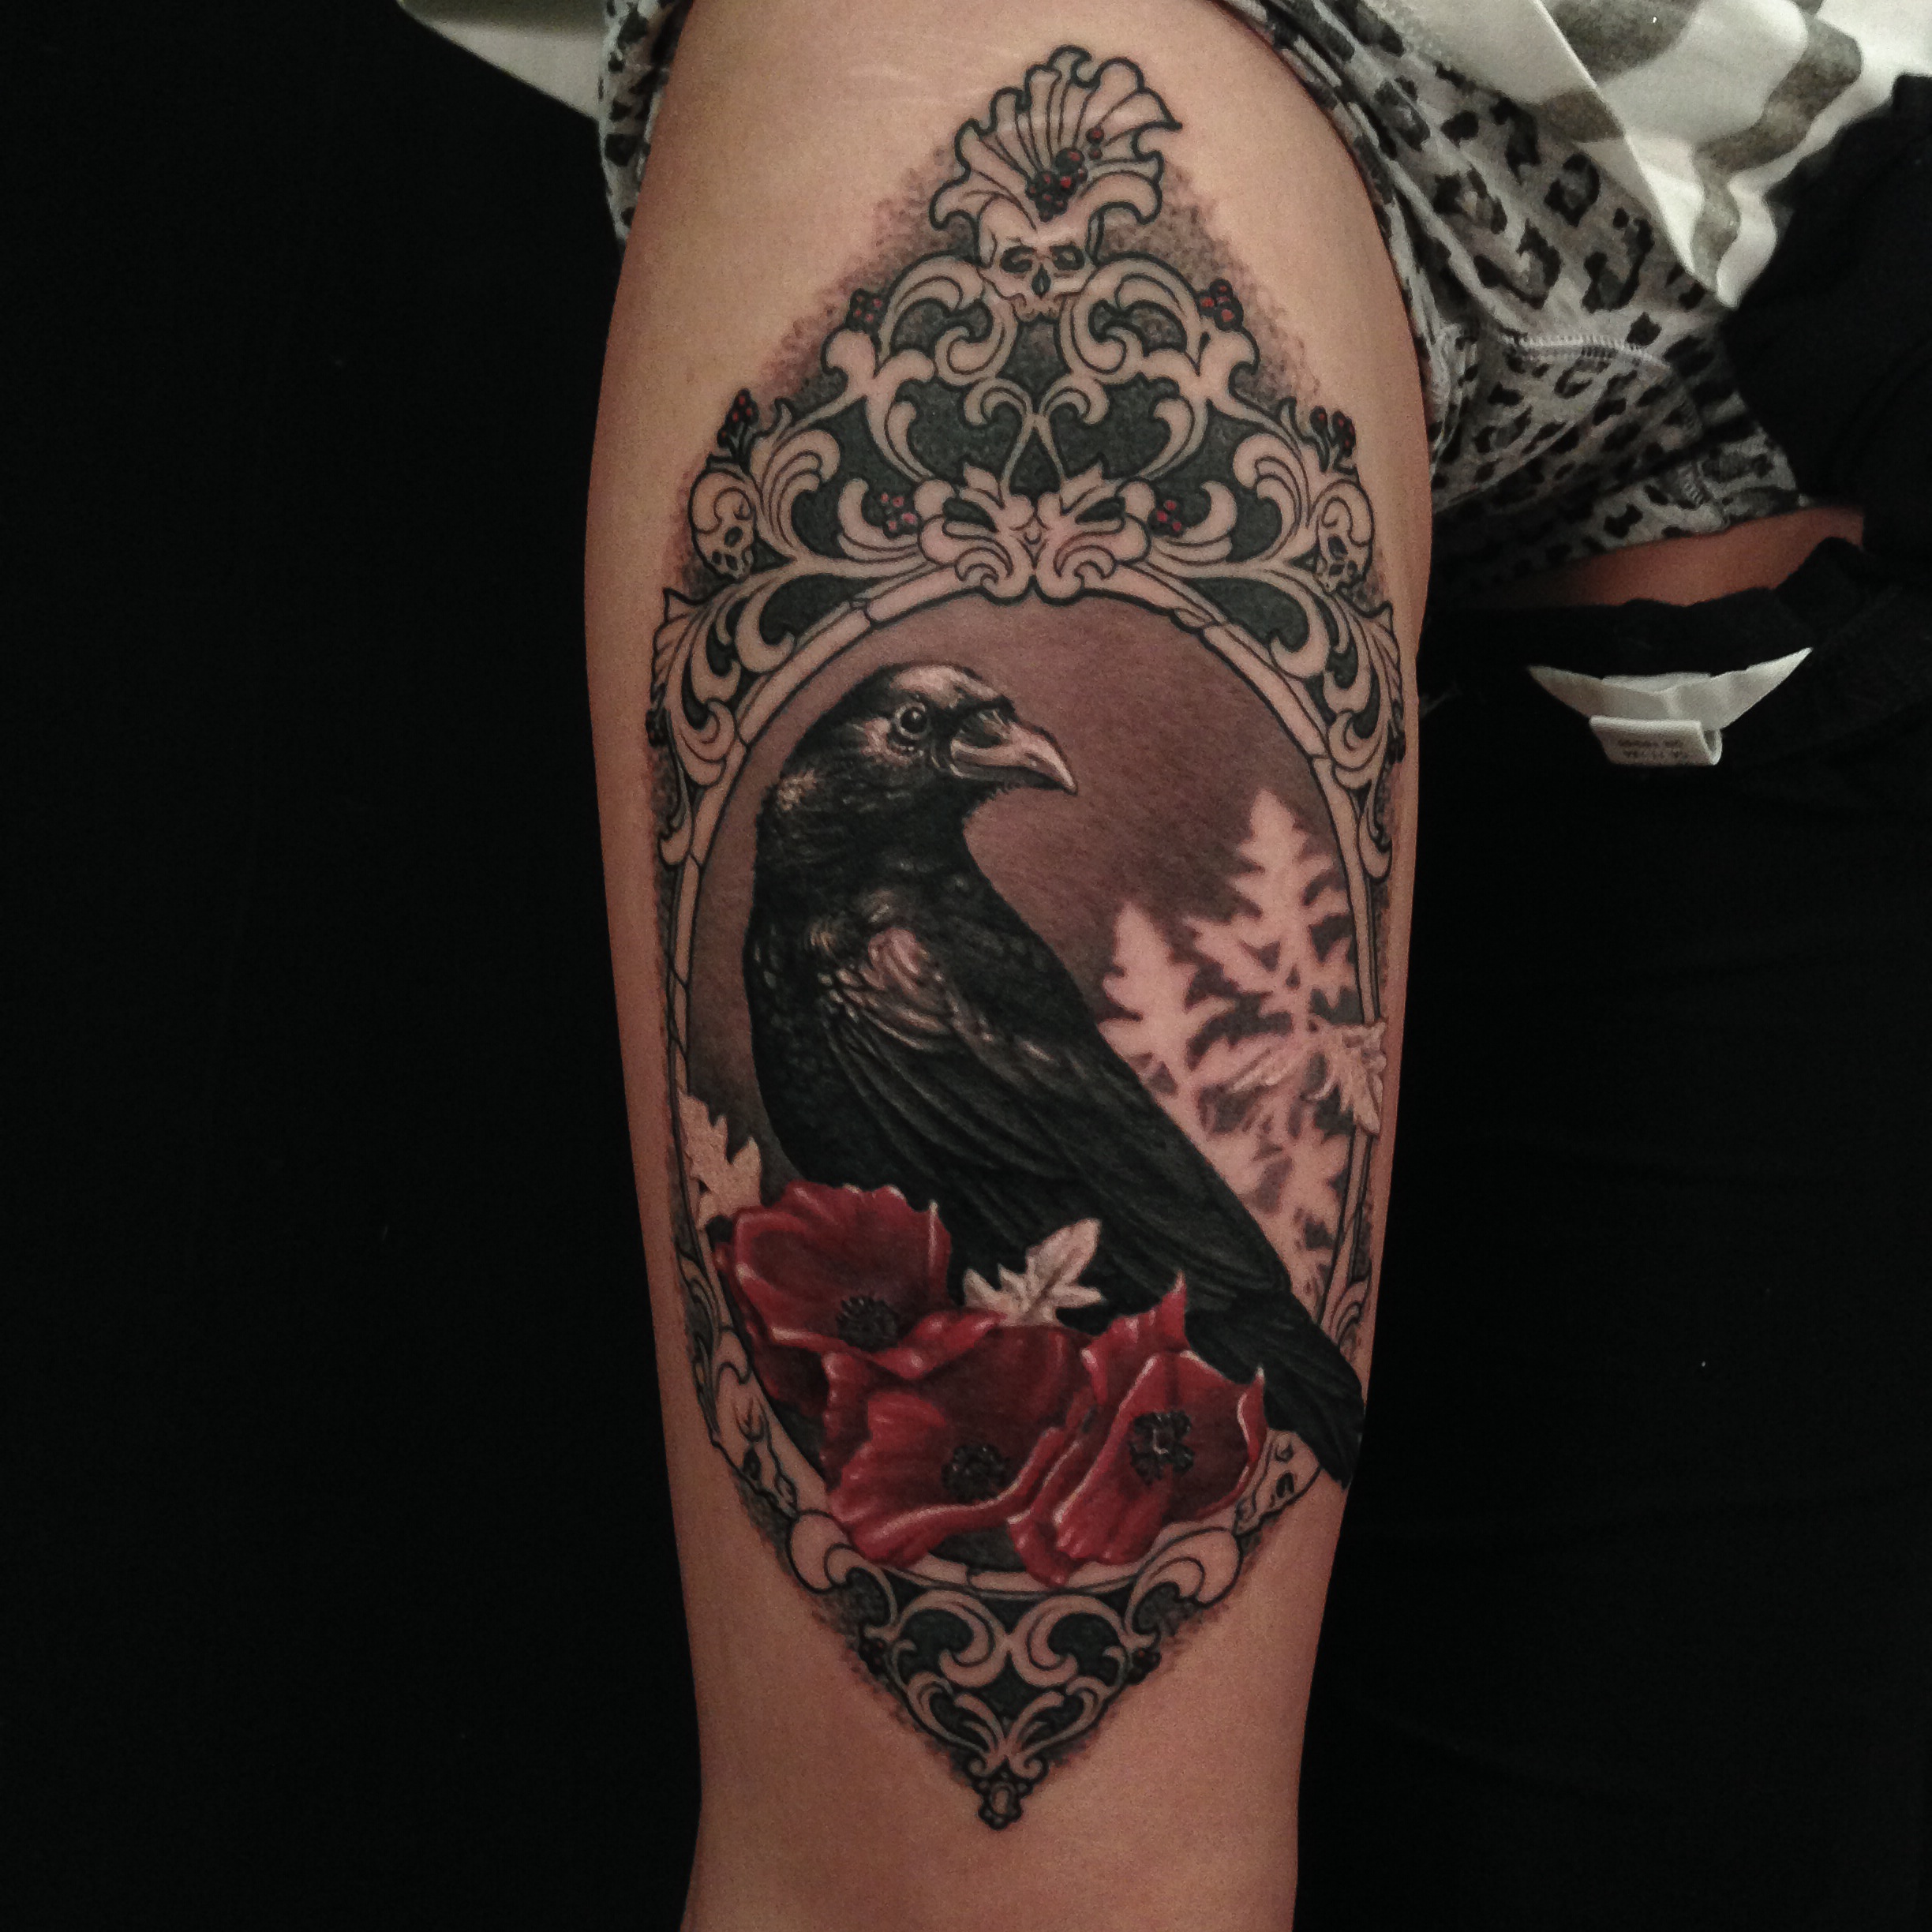 I tatuaggi di Clod the Ripper - Foto di Marco Annunziata